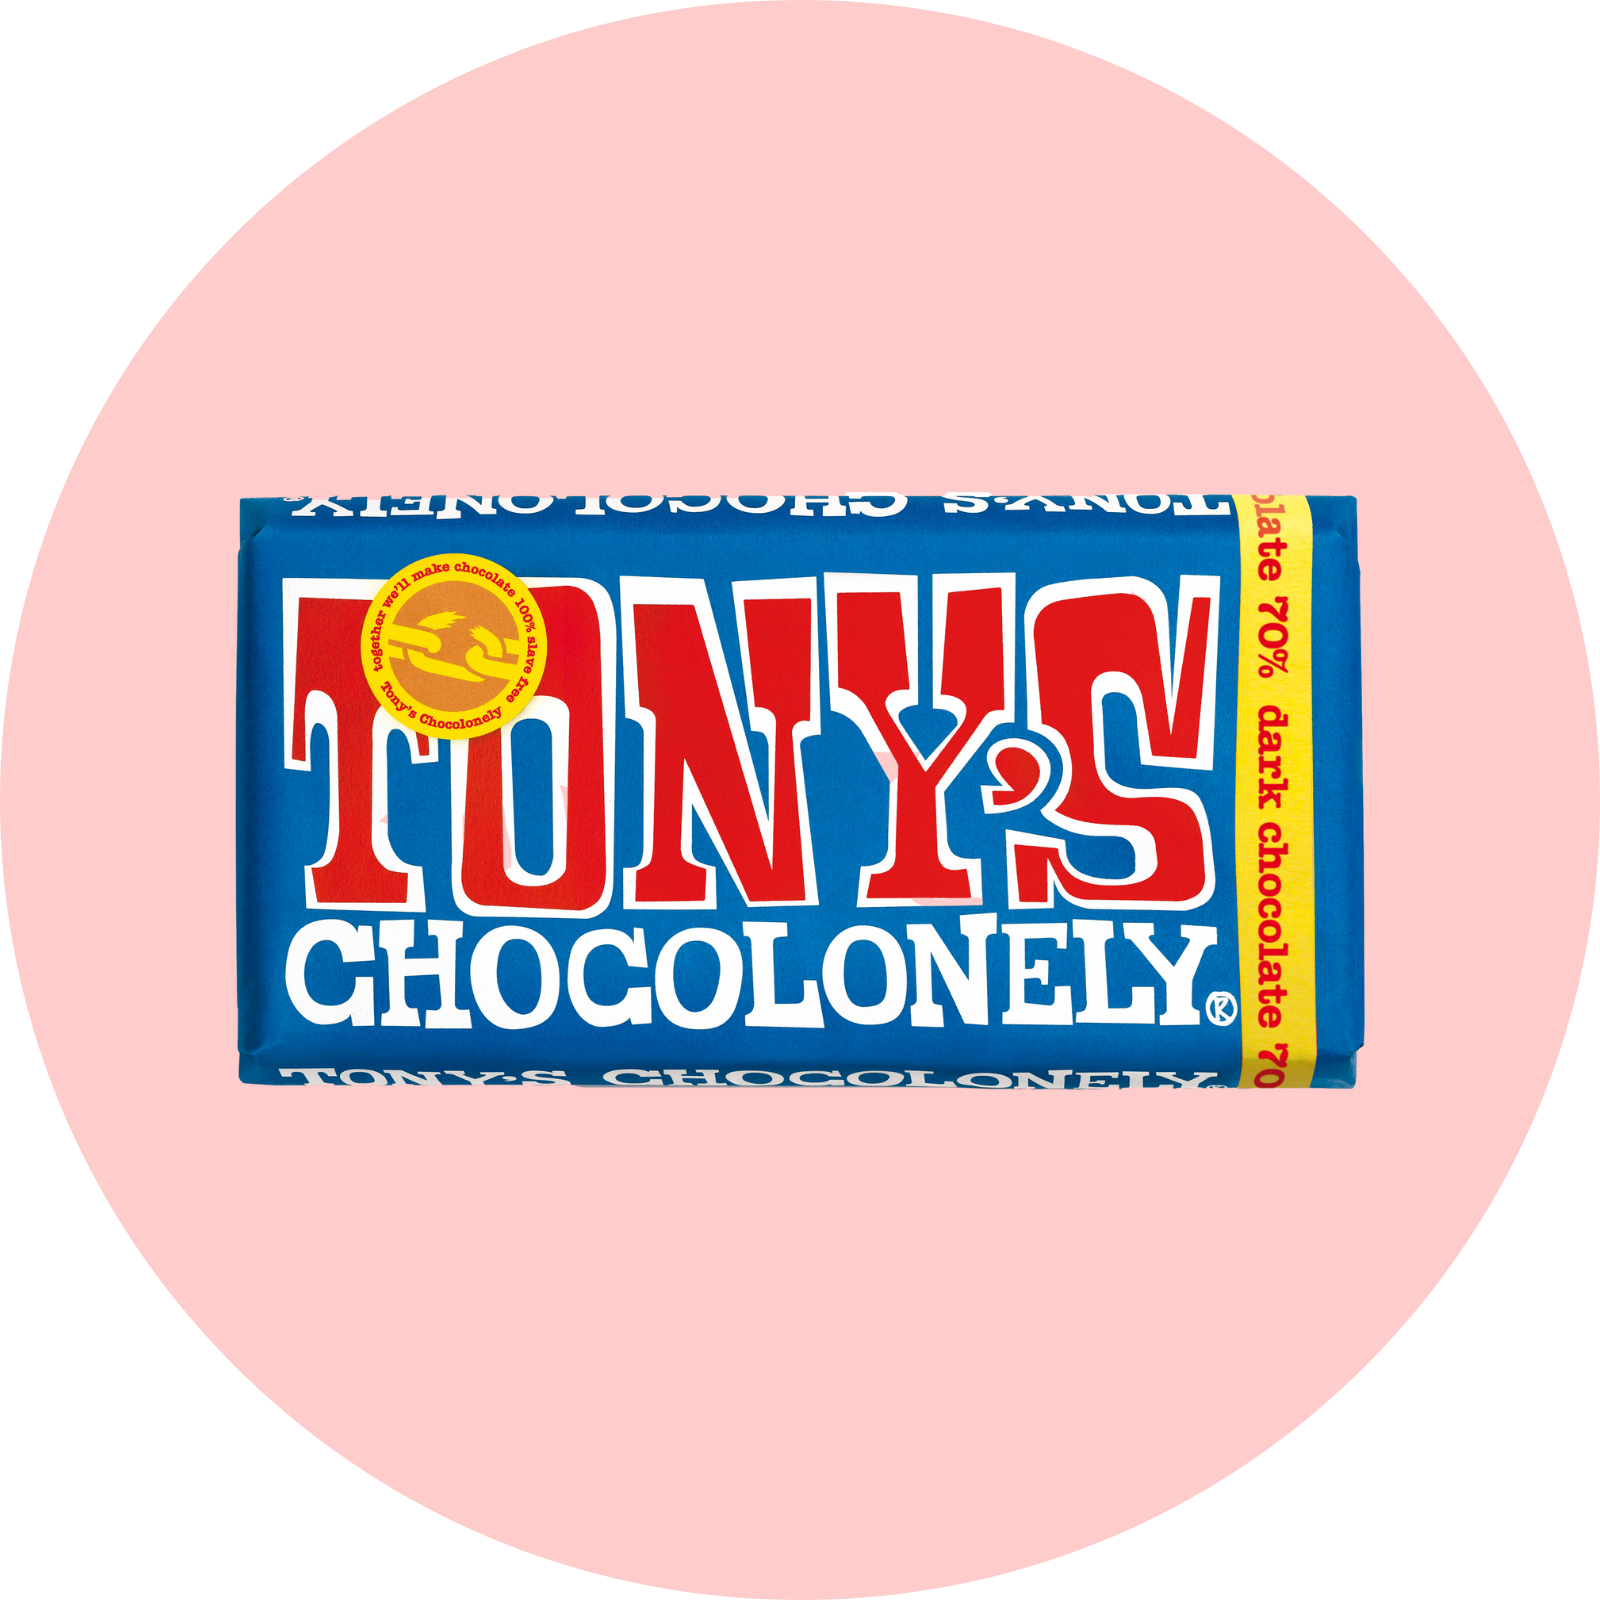 Tony's Chocolonely Extra Dark